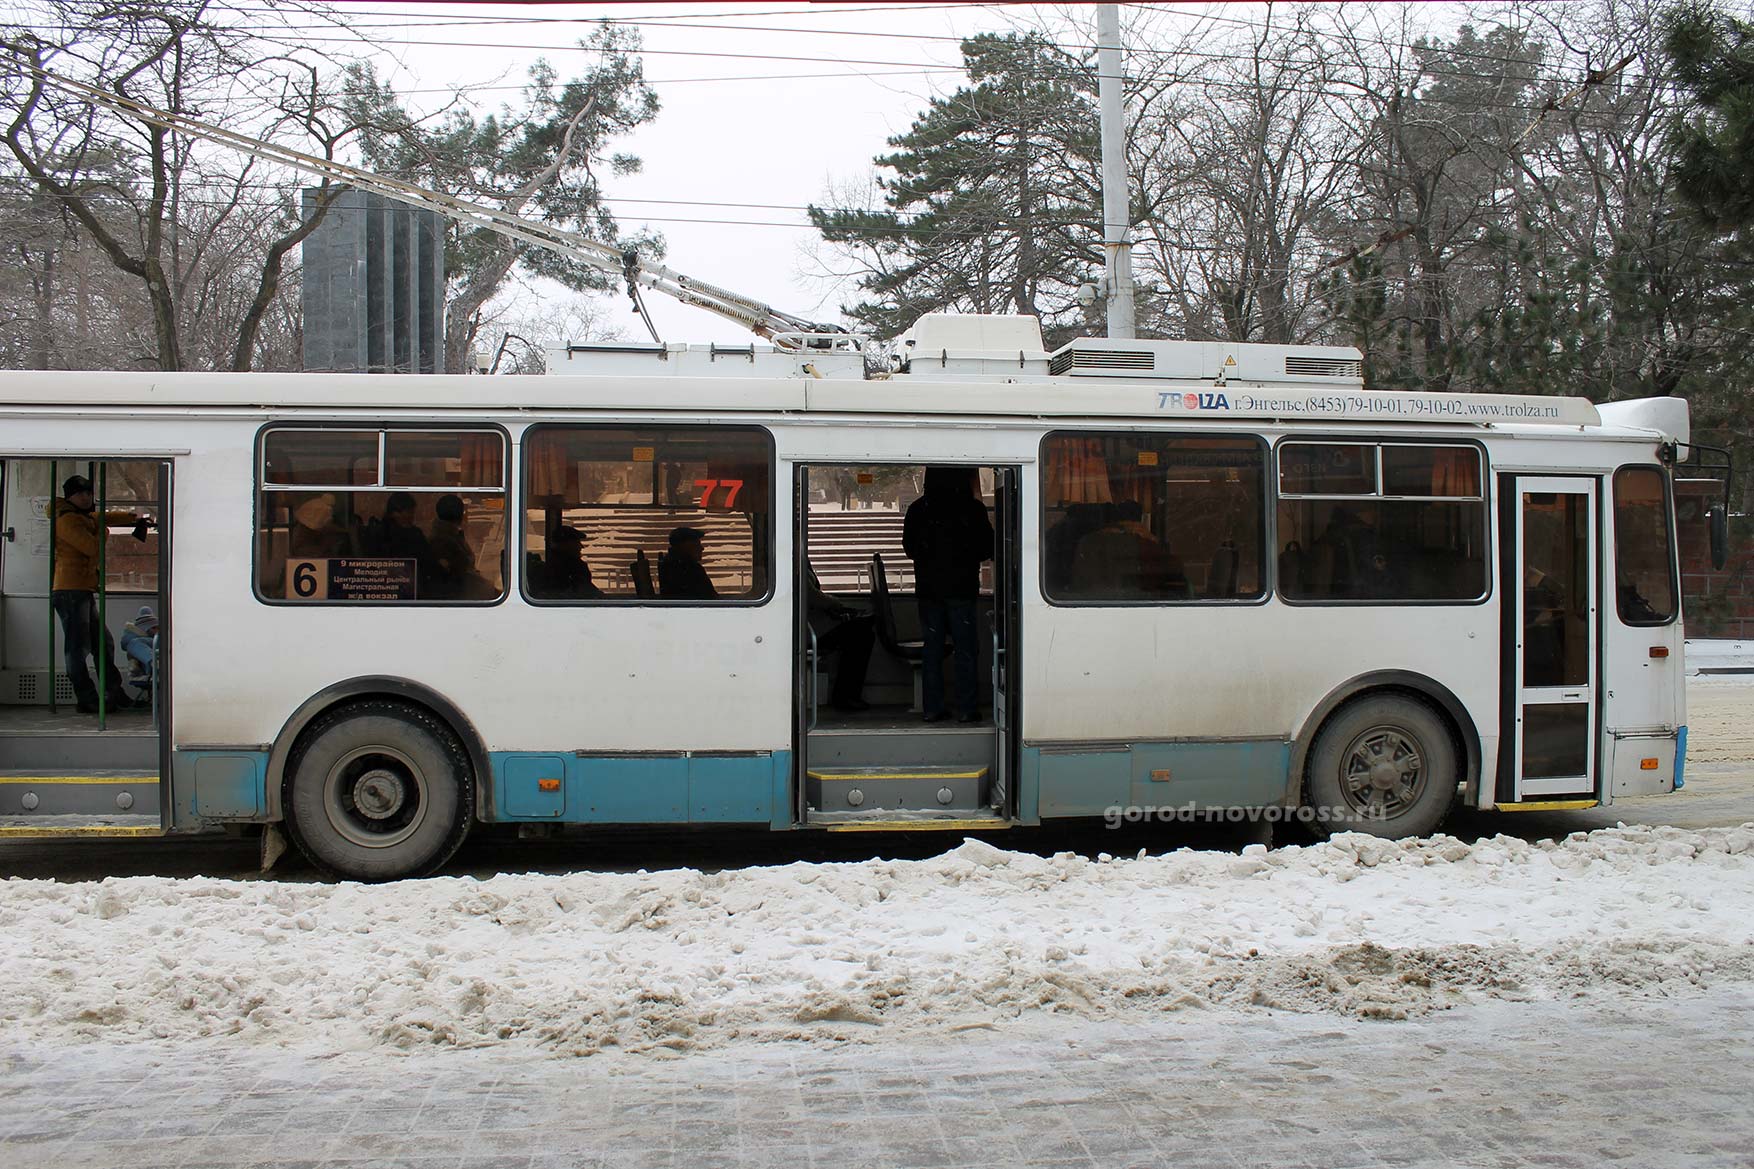 Троллейбус на Парке Ленина. Зима 2014 год. Новороссийск